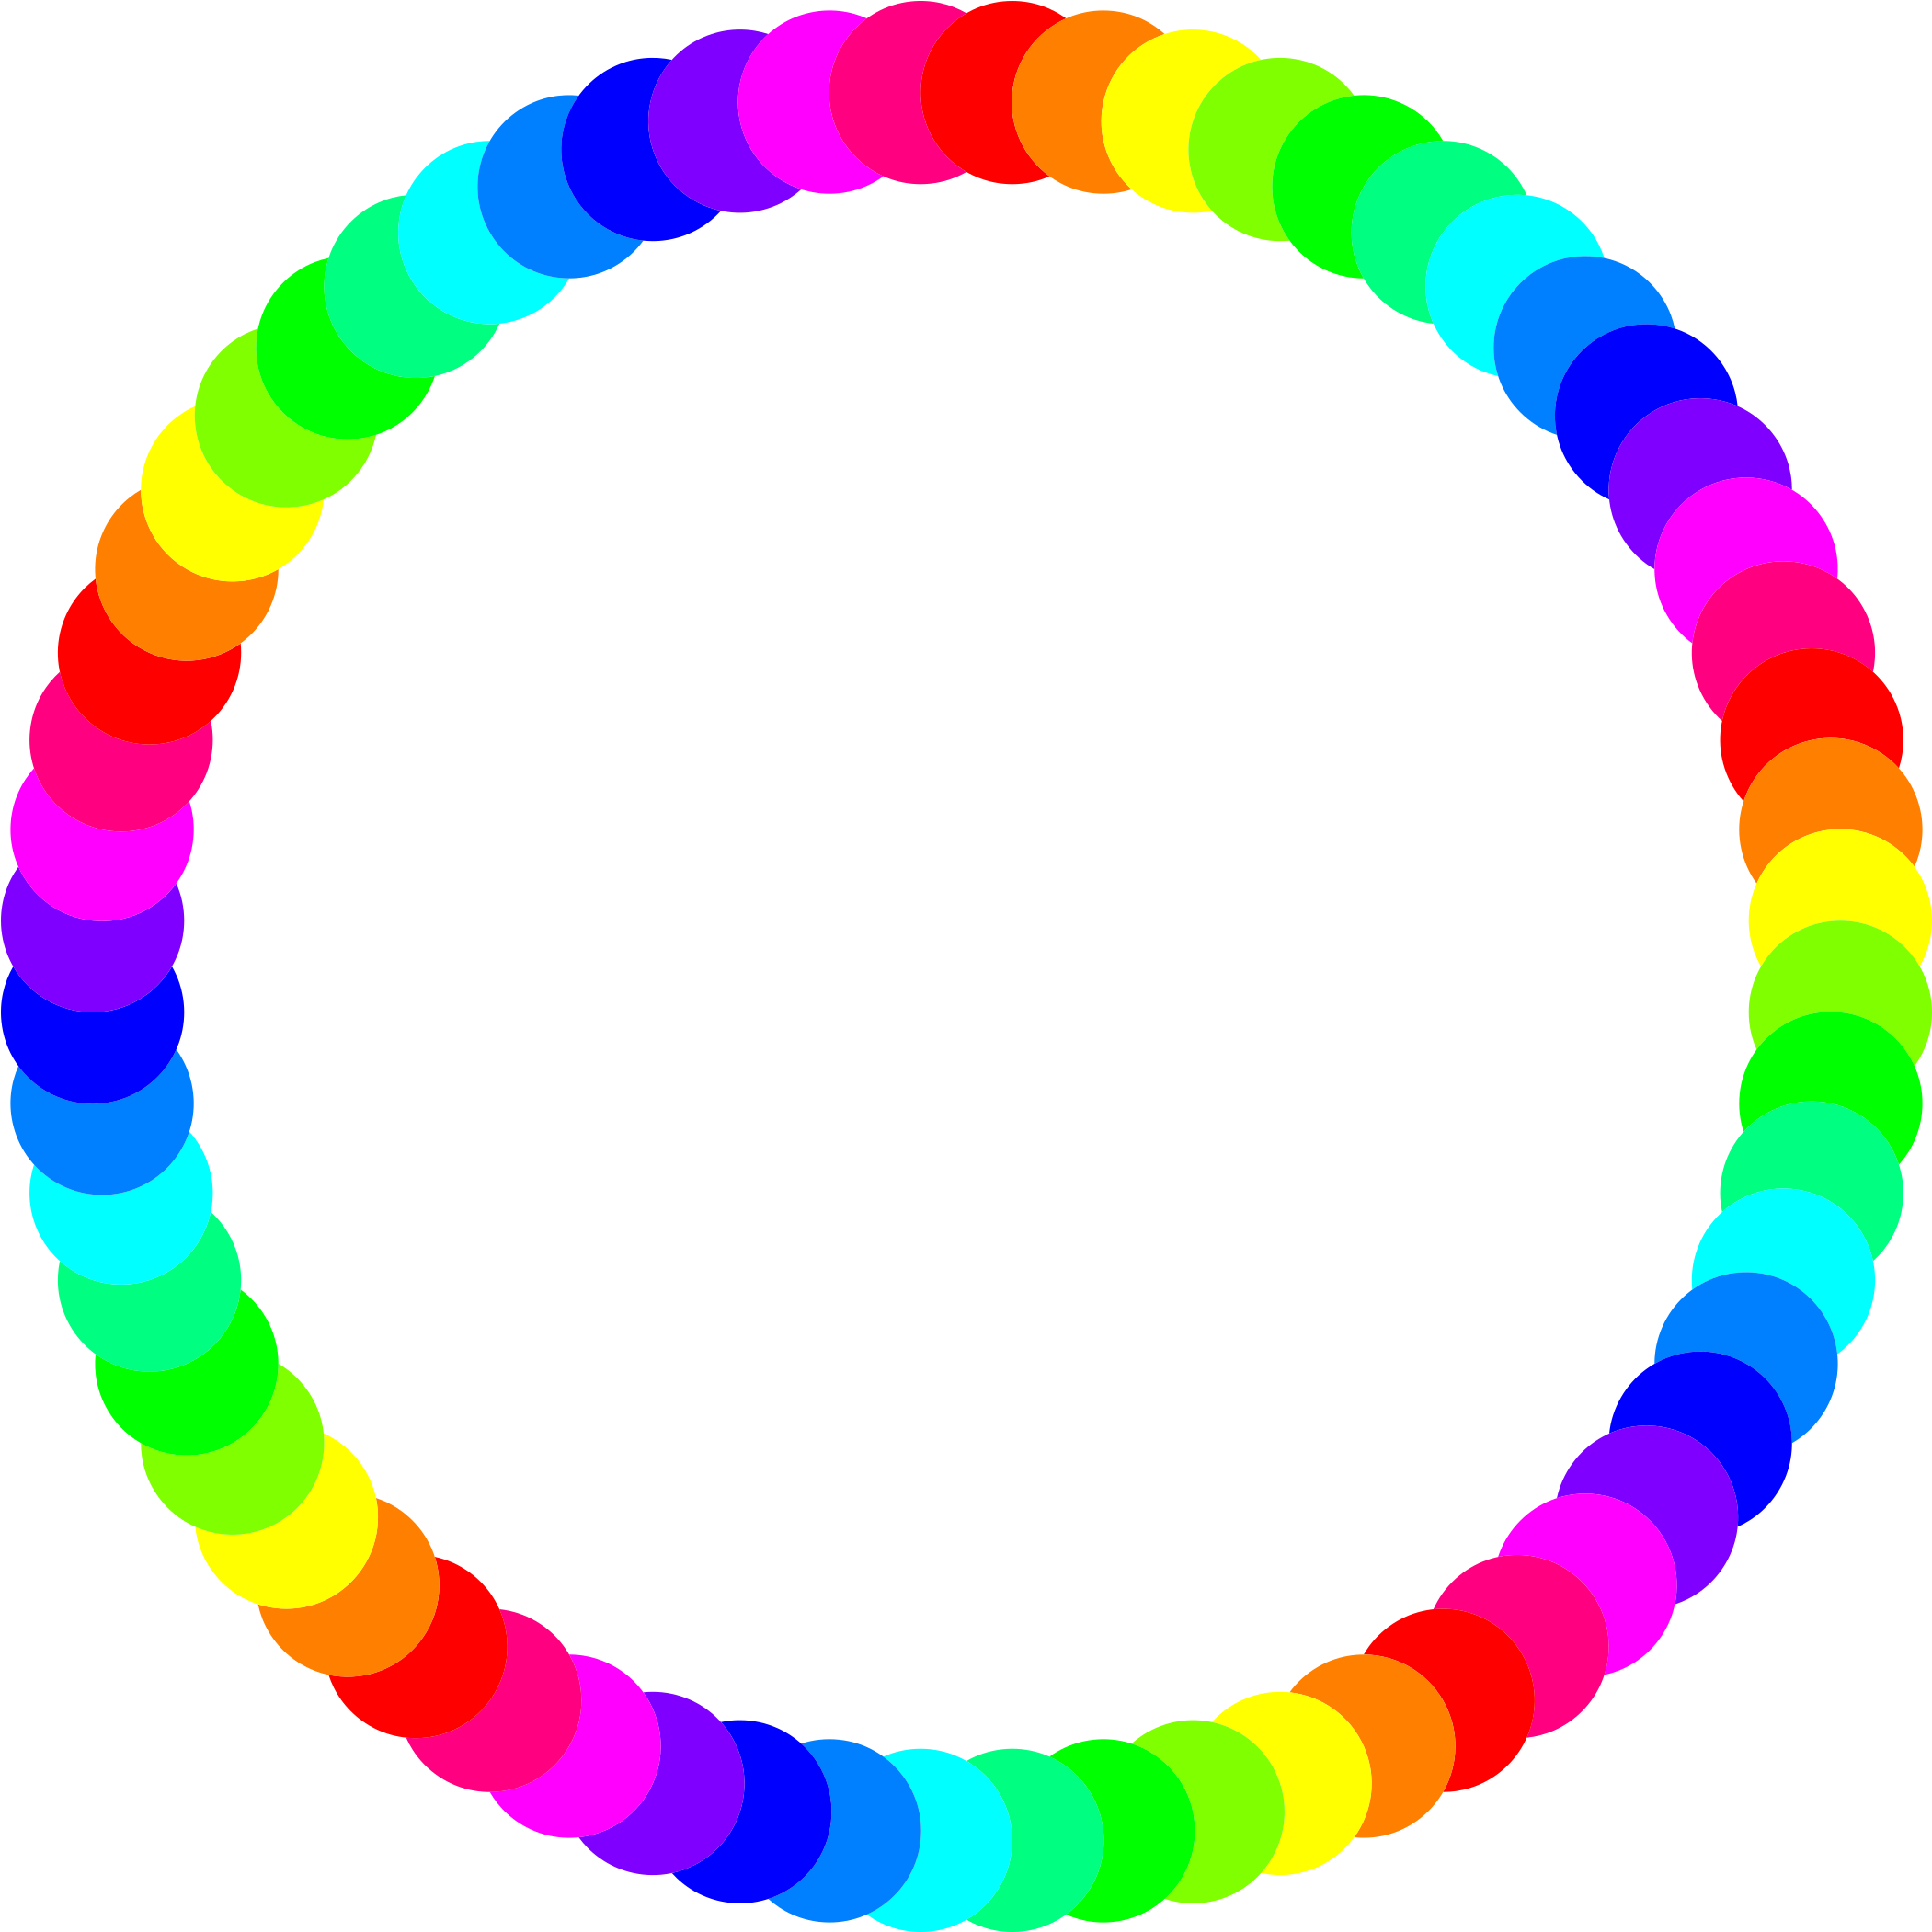 Circle Ring - Rainbow Circle Border (2400x2400)